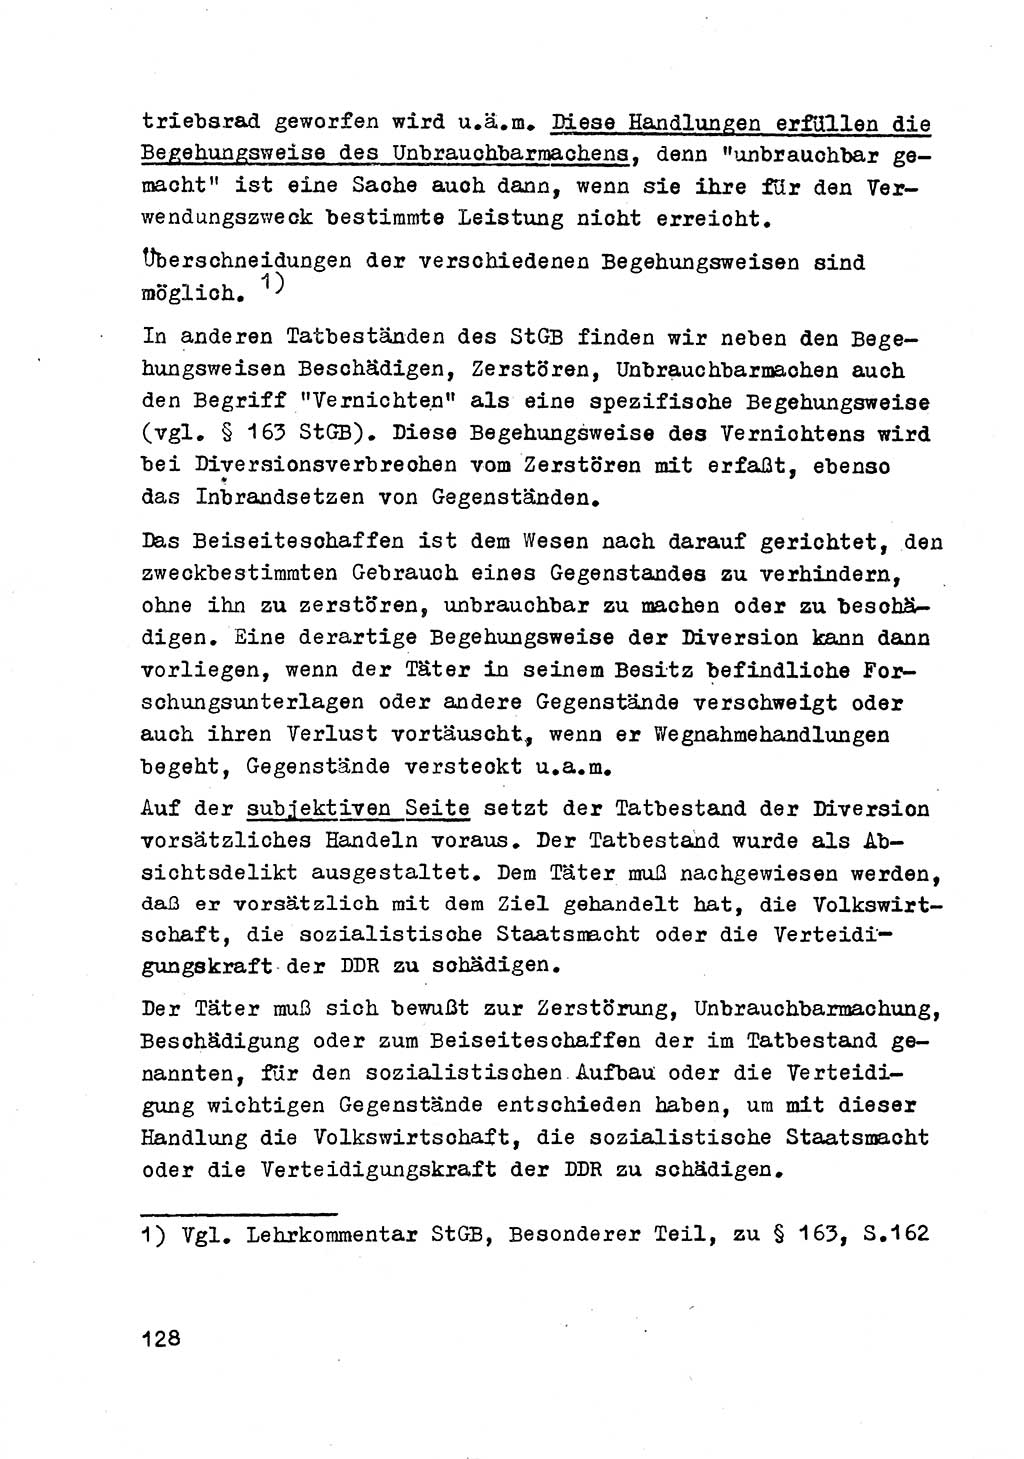 Strafrecht der DDR (Deutsche Demokratische Republik), Besonderer Teil, Lehrmaterial, Heft 2 1969, Seite 128 (Strafr. DDR BT Lehrmat. H. 2 1969, S. 128)